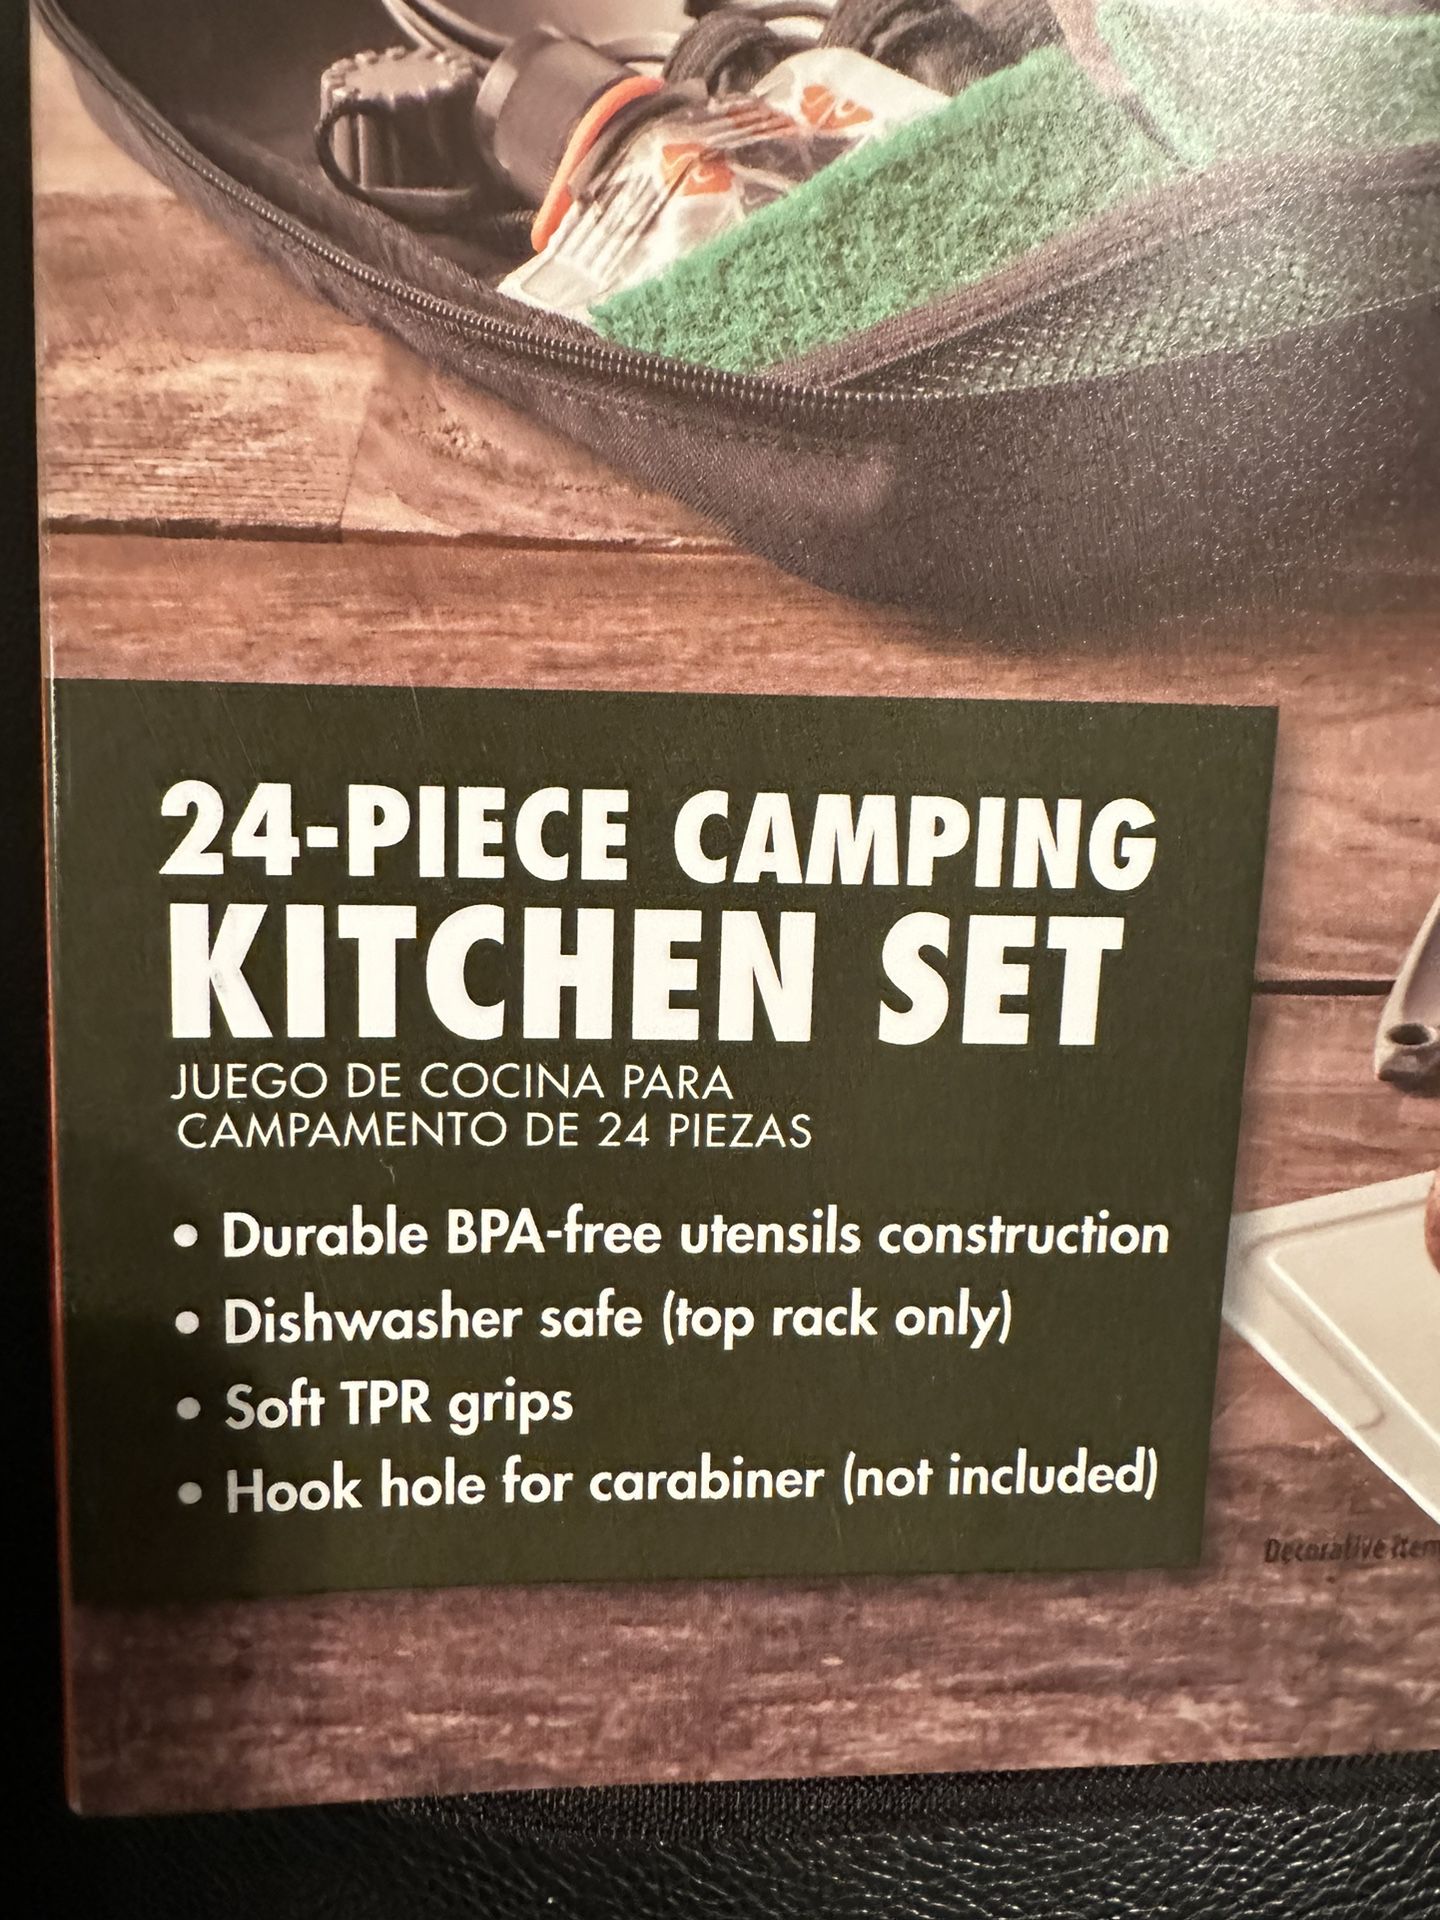 Camping Kitchen Set